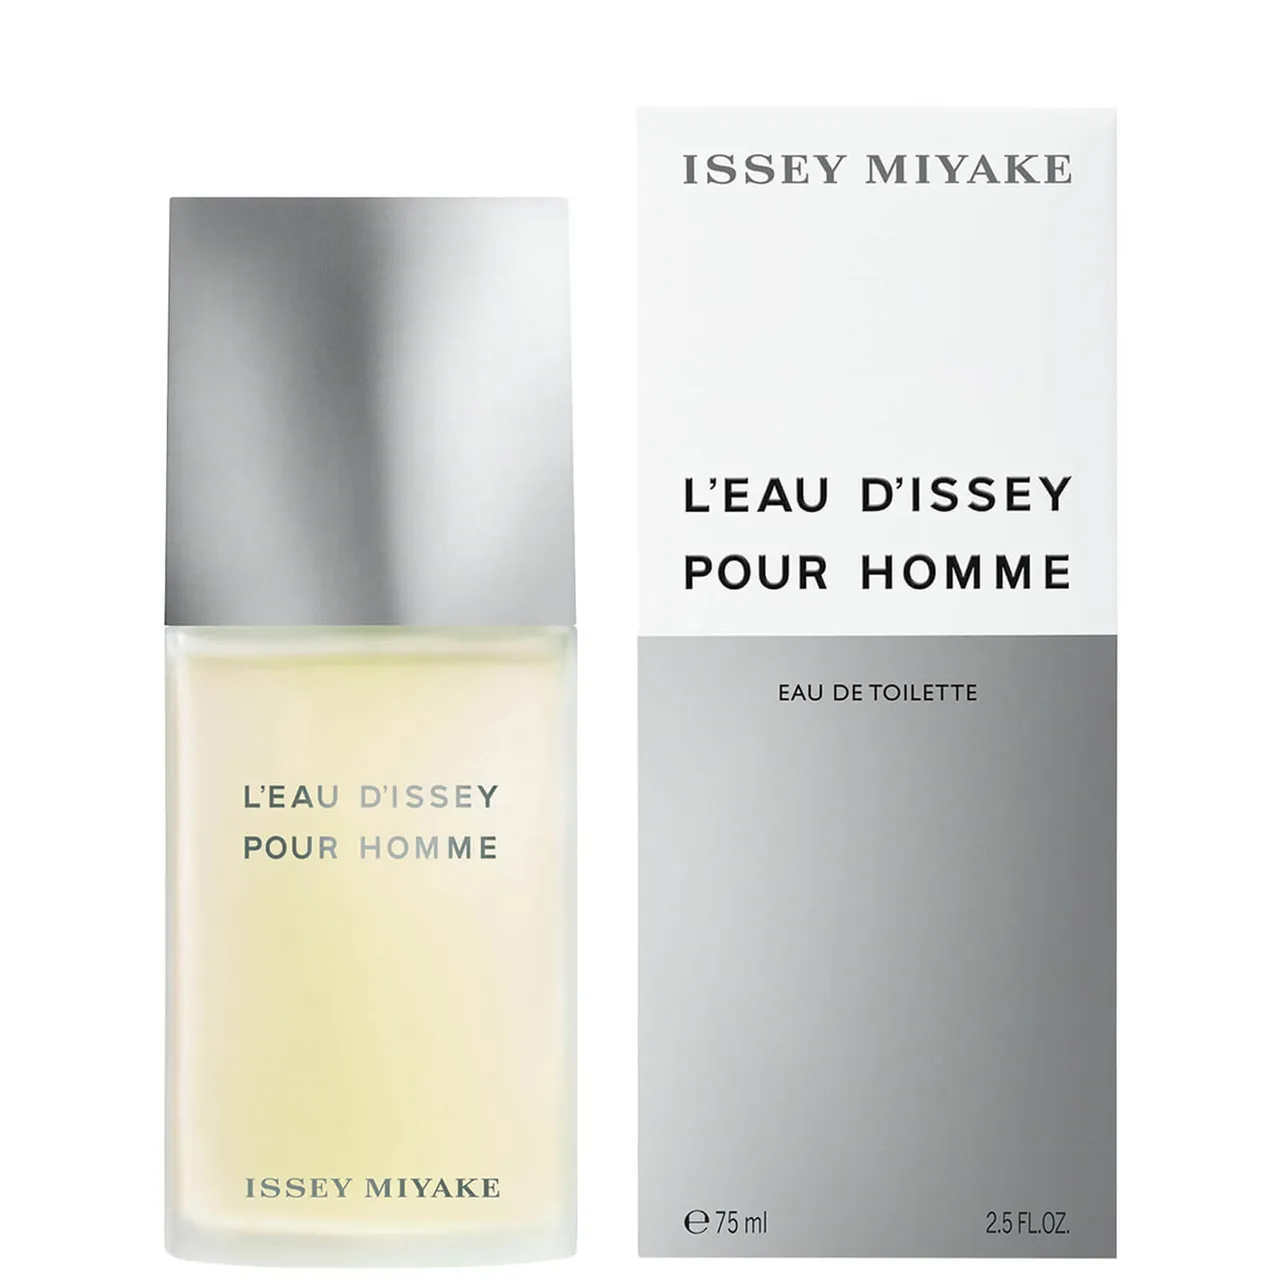 Issey Miyake L'Eau d'Issey Pour Homme Eau de Toilette 75ml